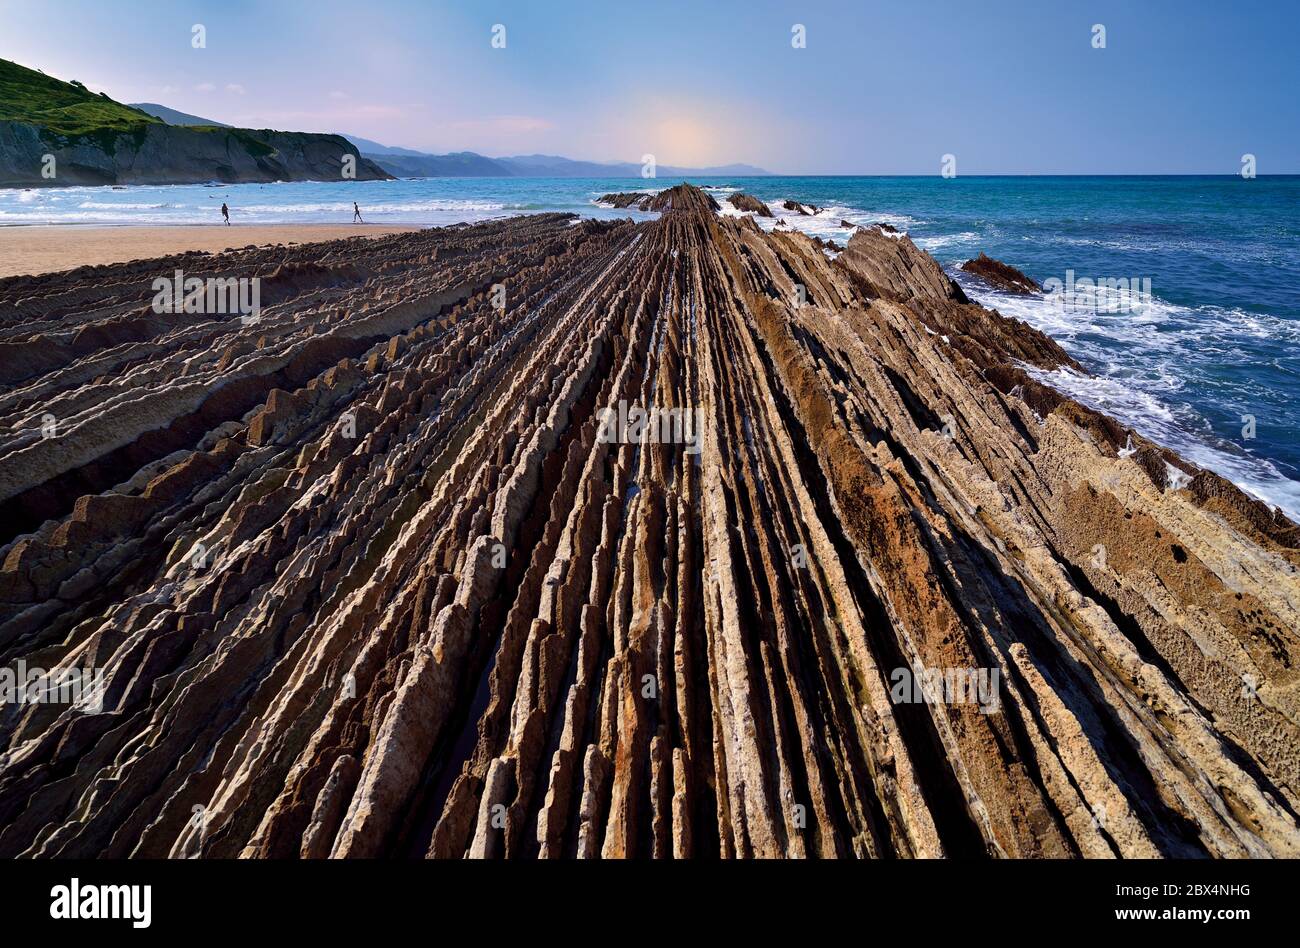 Vista de cerca de las líneas de roca que van al océano en la playa de marea baja Foto de stock